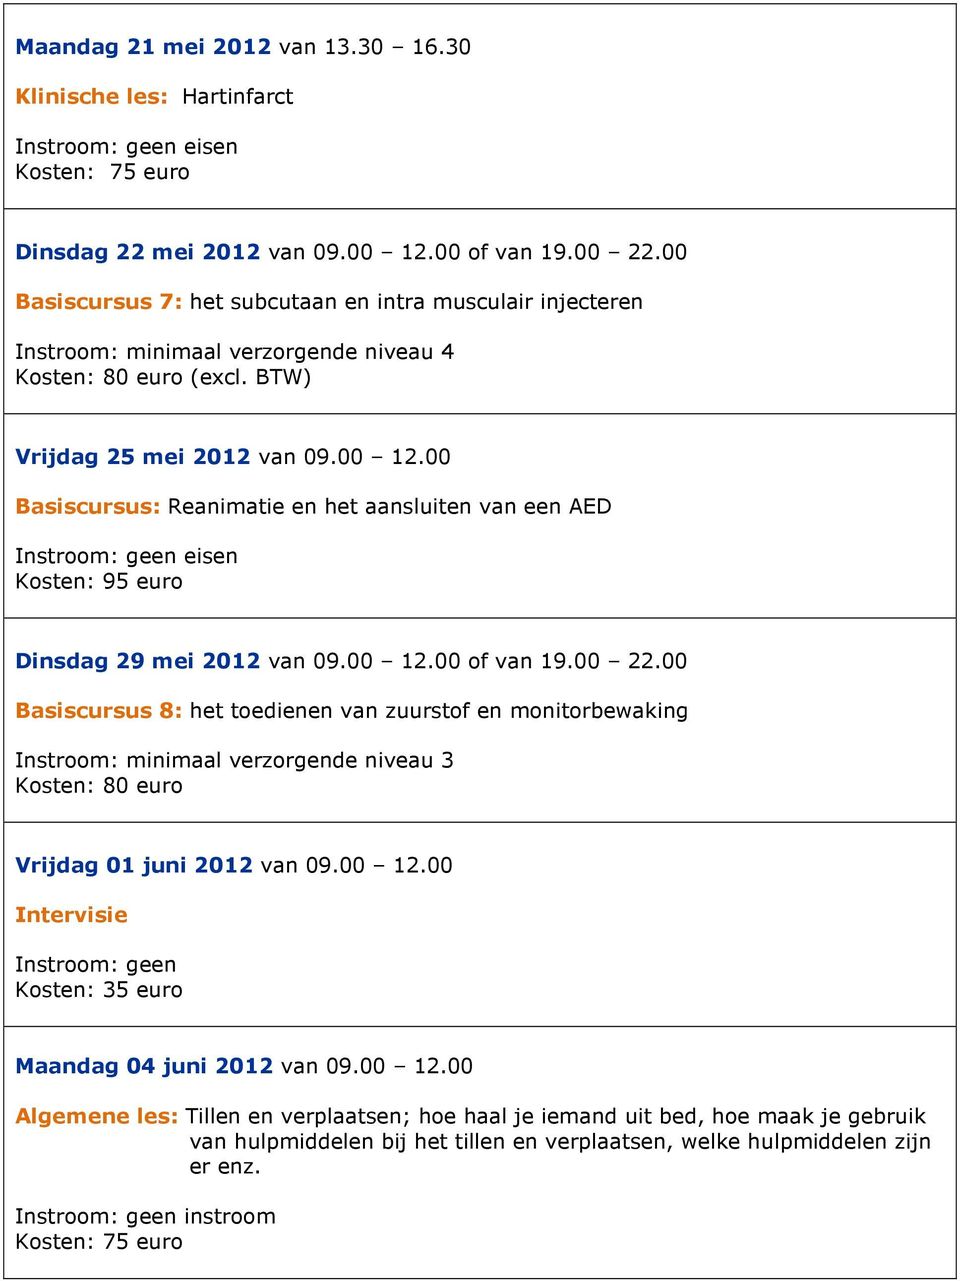 00 Basiscursus: Reanimatie en het aansluiten van een AED Kosten: 95 euro Dinsdag 29 mei 2012 van 09.00 12.00 of van 19.00 22.